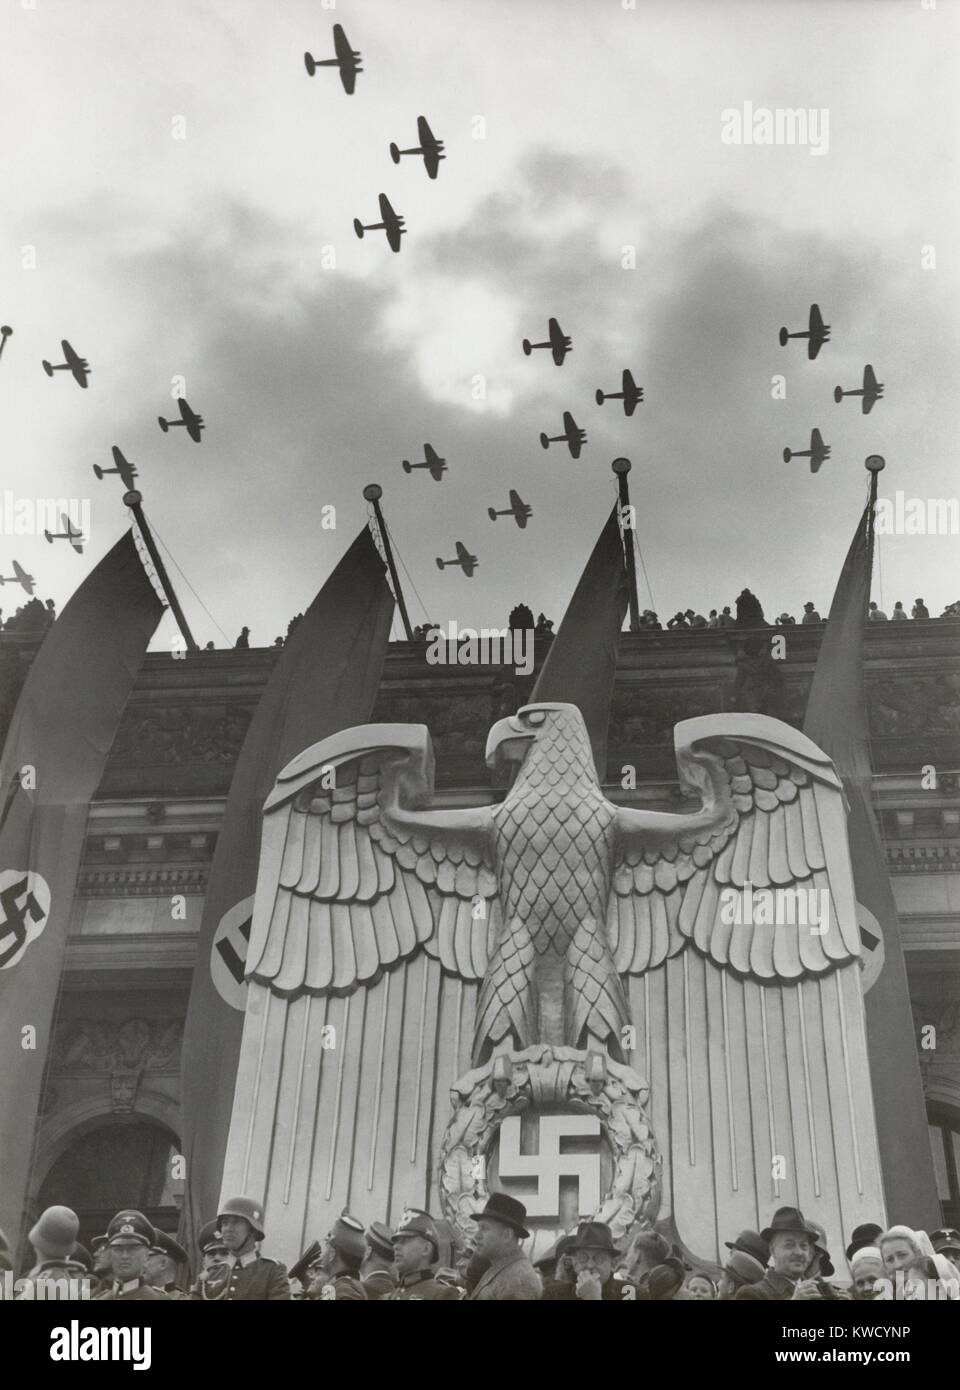 Luftwaffe Fly-By in onore del compleanno di Hitlers nel quartiere di Charlottenburg, Berlino, 20 aprile 1939. Per l'edificio è una scultura di un nazista tedesco eagle e striscioni con svastiche (BSLOC 2017 2 70) Foto Stock